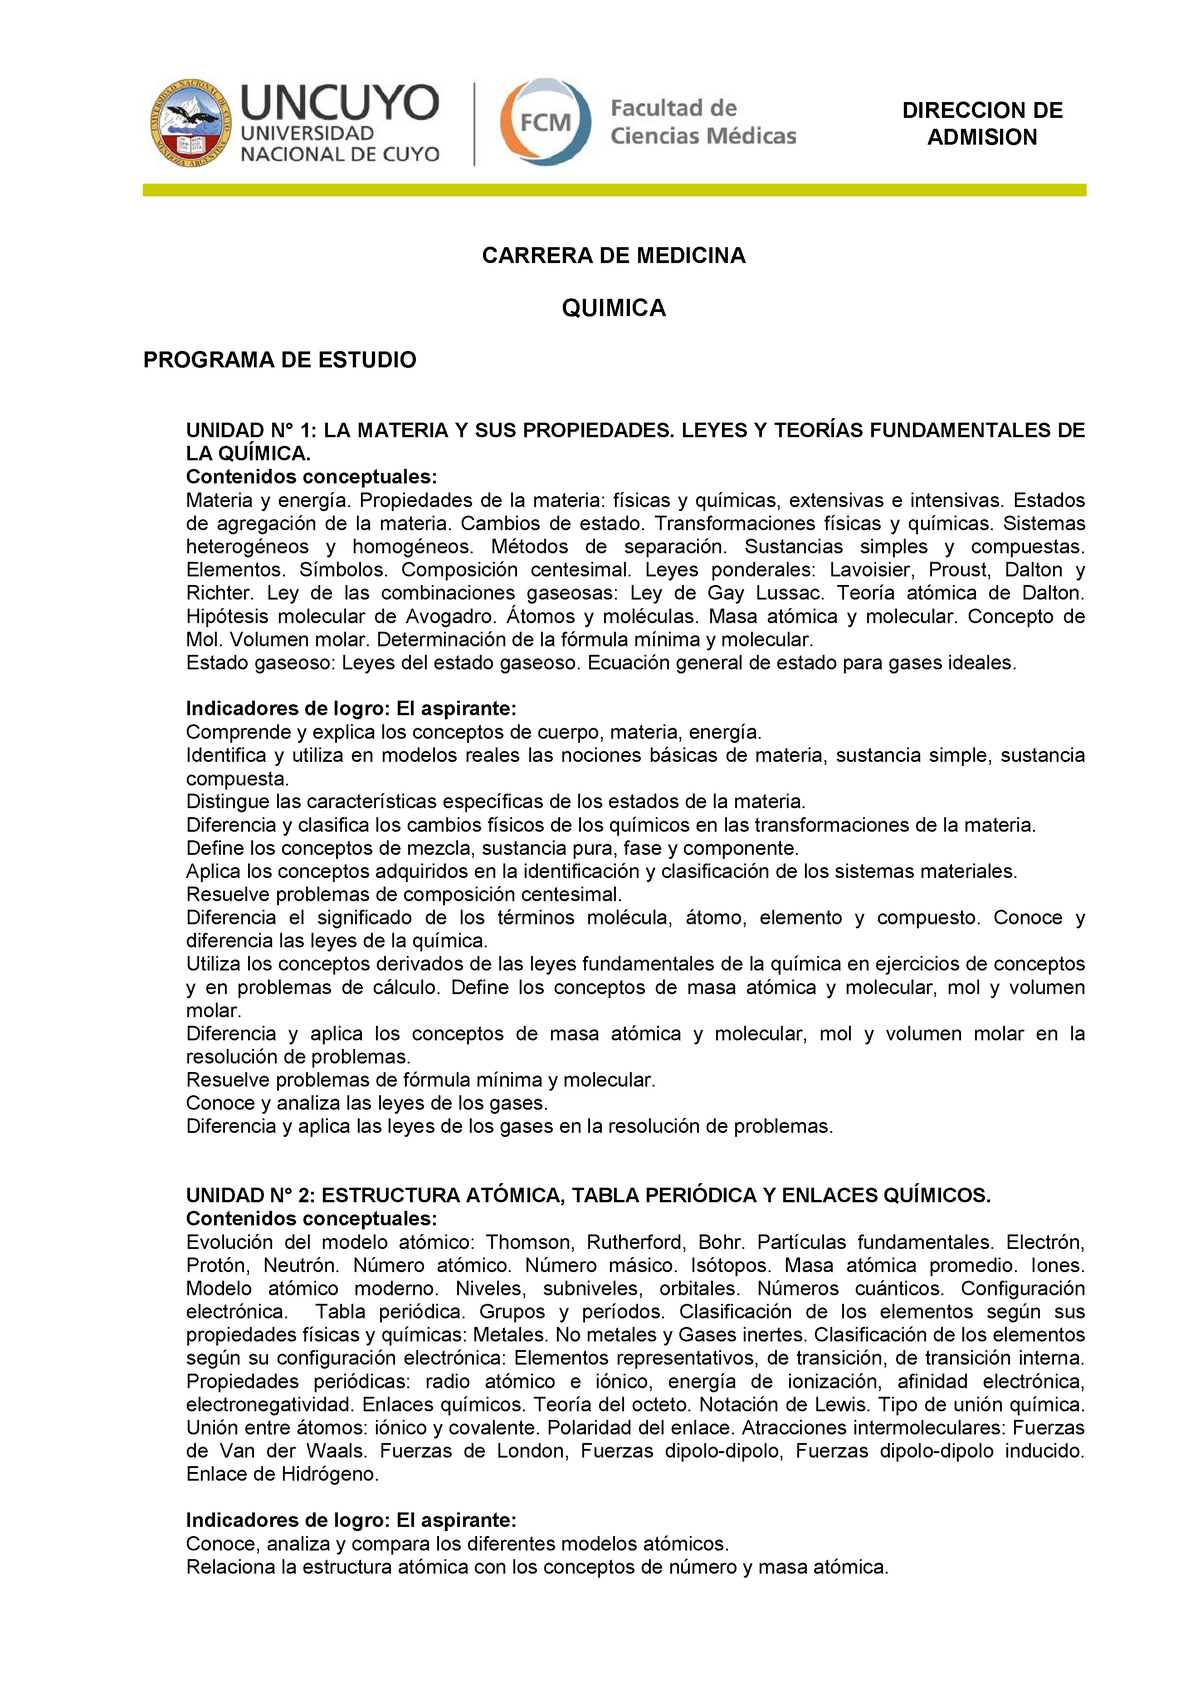 Programa de química ingreso a medicina UNCuyo - ADMISION CARRERA DE MEDICINA  QUIMICA PROGRAMA DE - Studocu